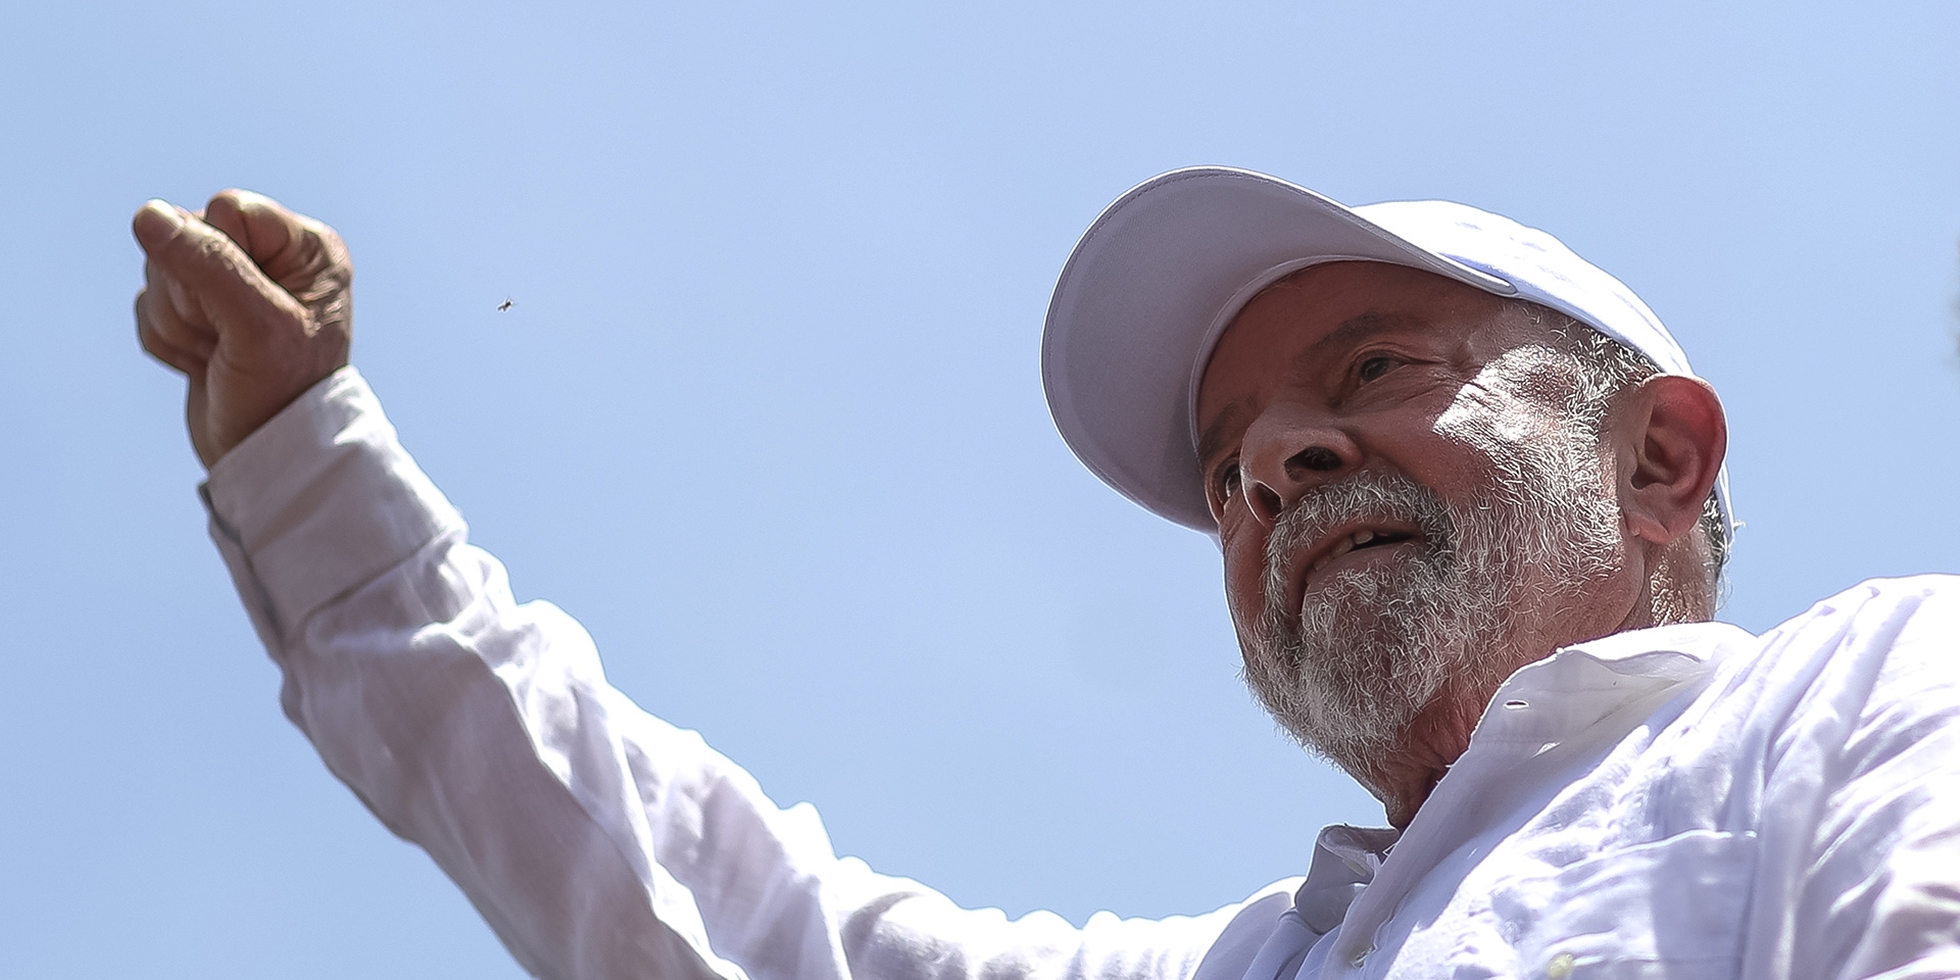 Lula convinto che Trump cercherà di sfruttare l'attentato per ottenere vantaggi elettorali